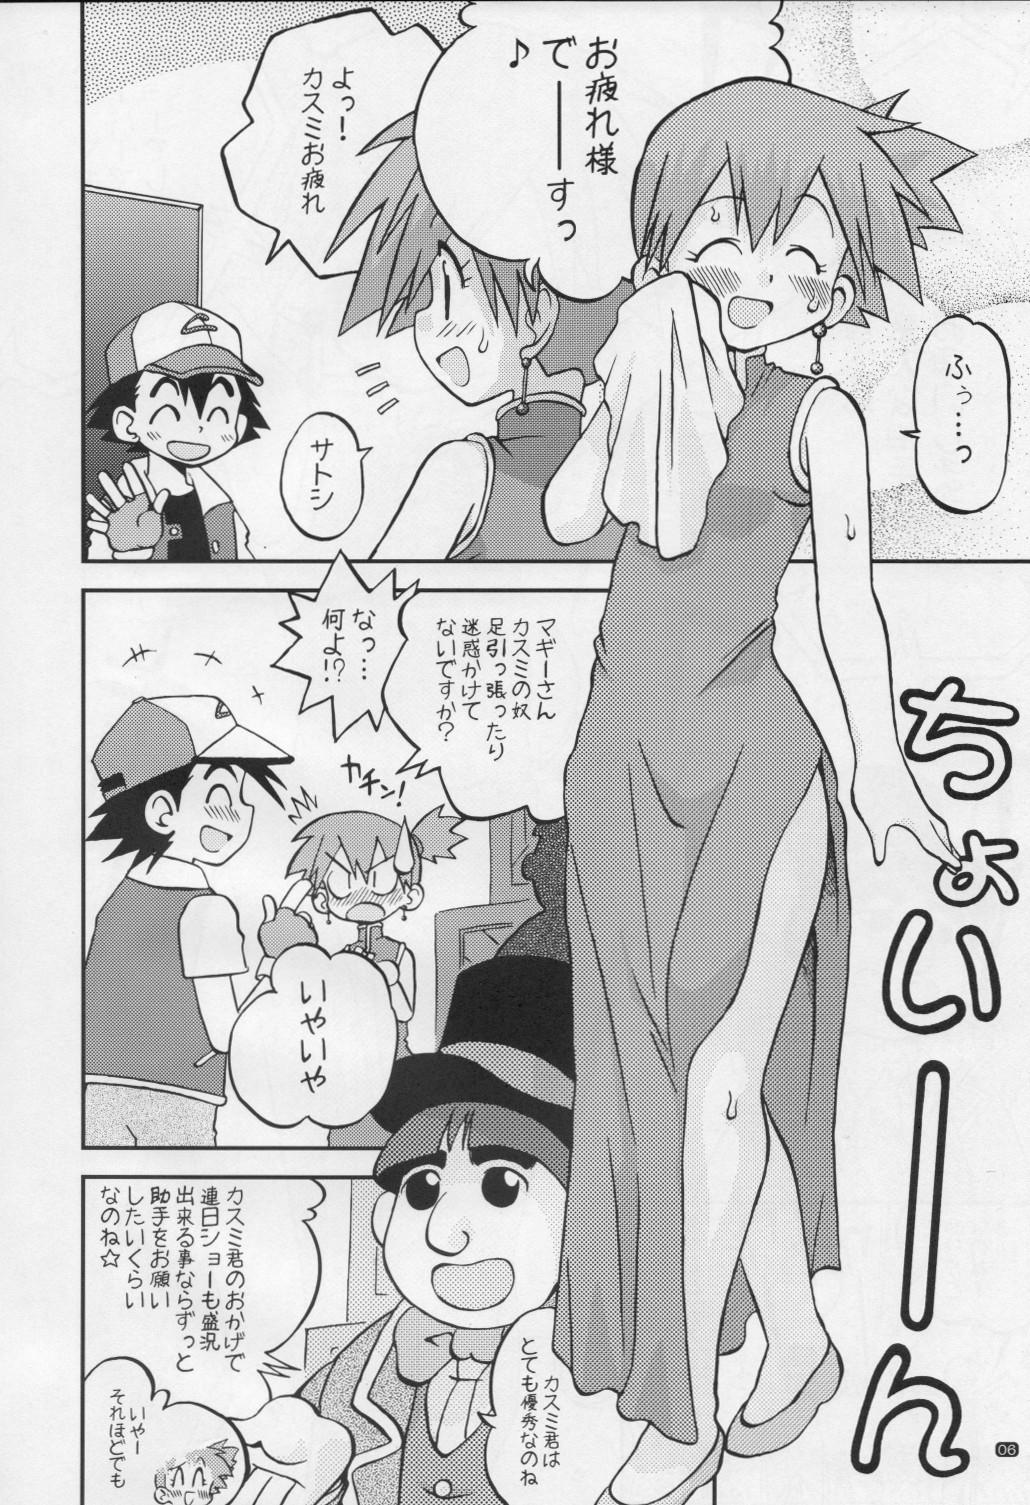 Athletic Yume no Tsubomi wa Tsubomi no Mama dakedo - Pokemon Boyfriend - Page 5